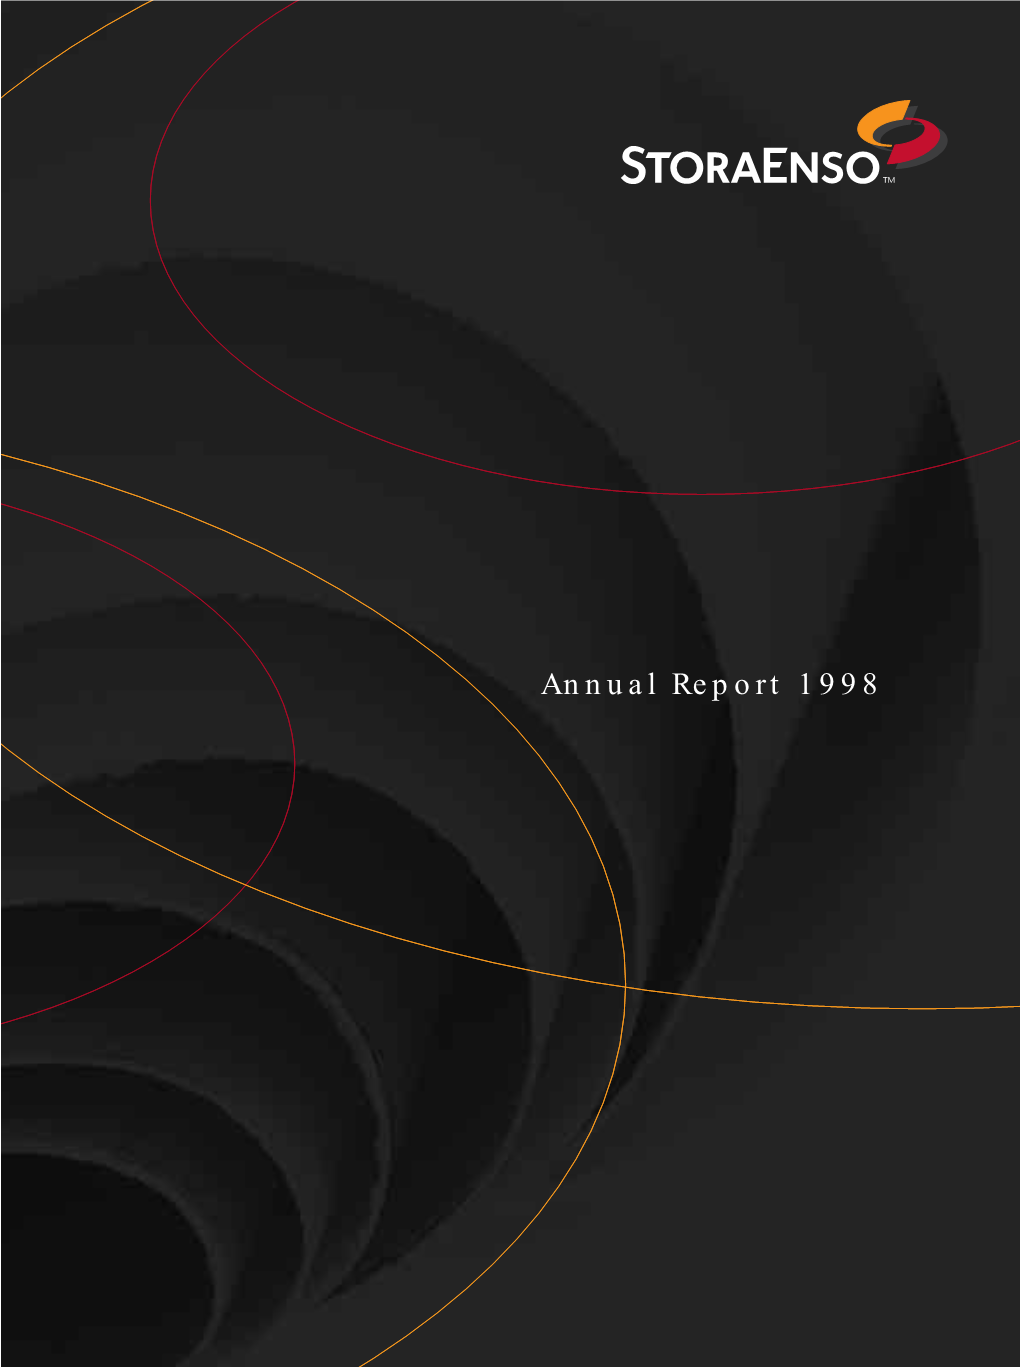 Stora Enso Annual Report 1998